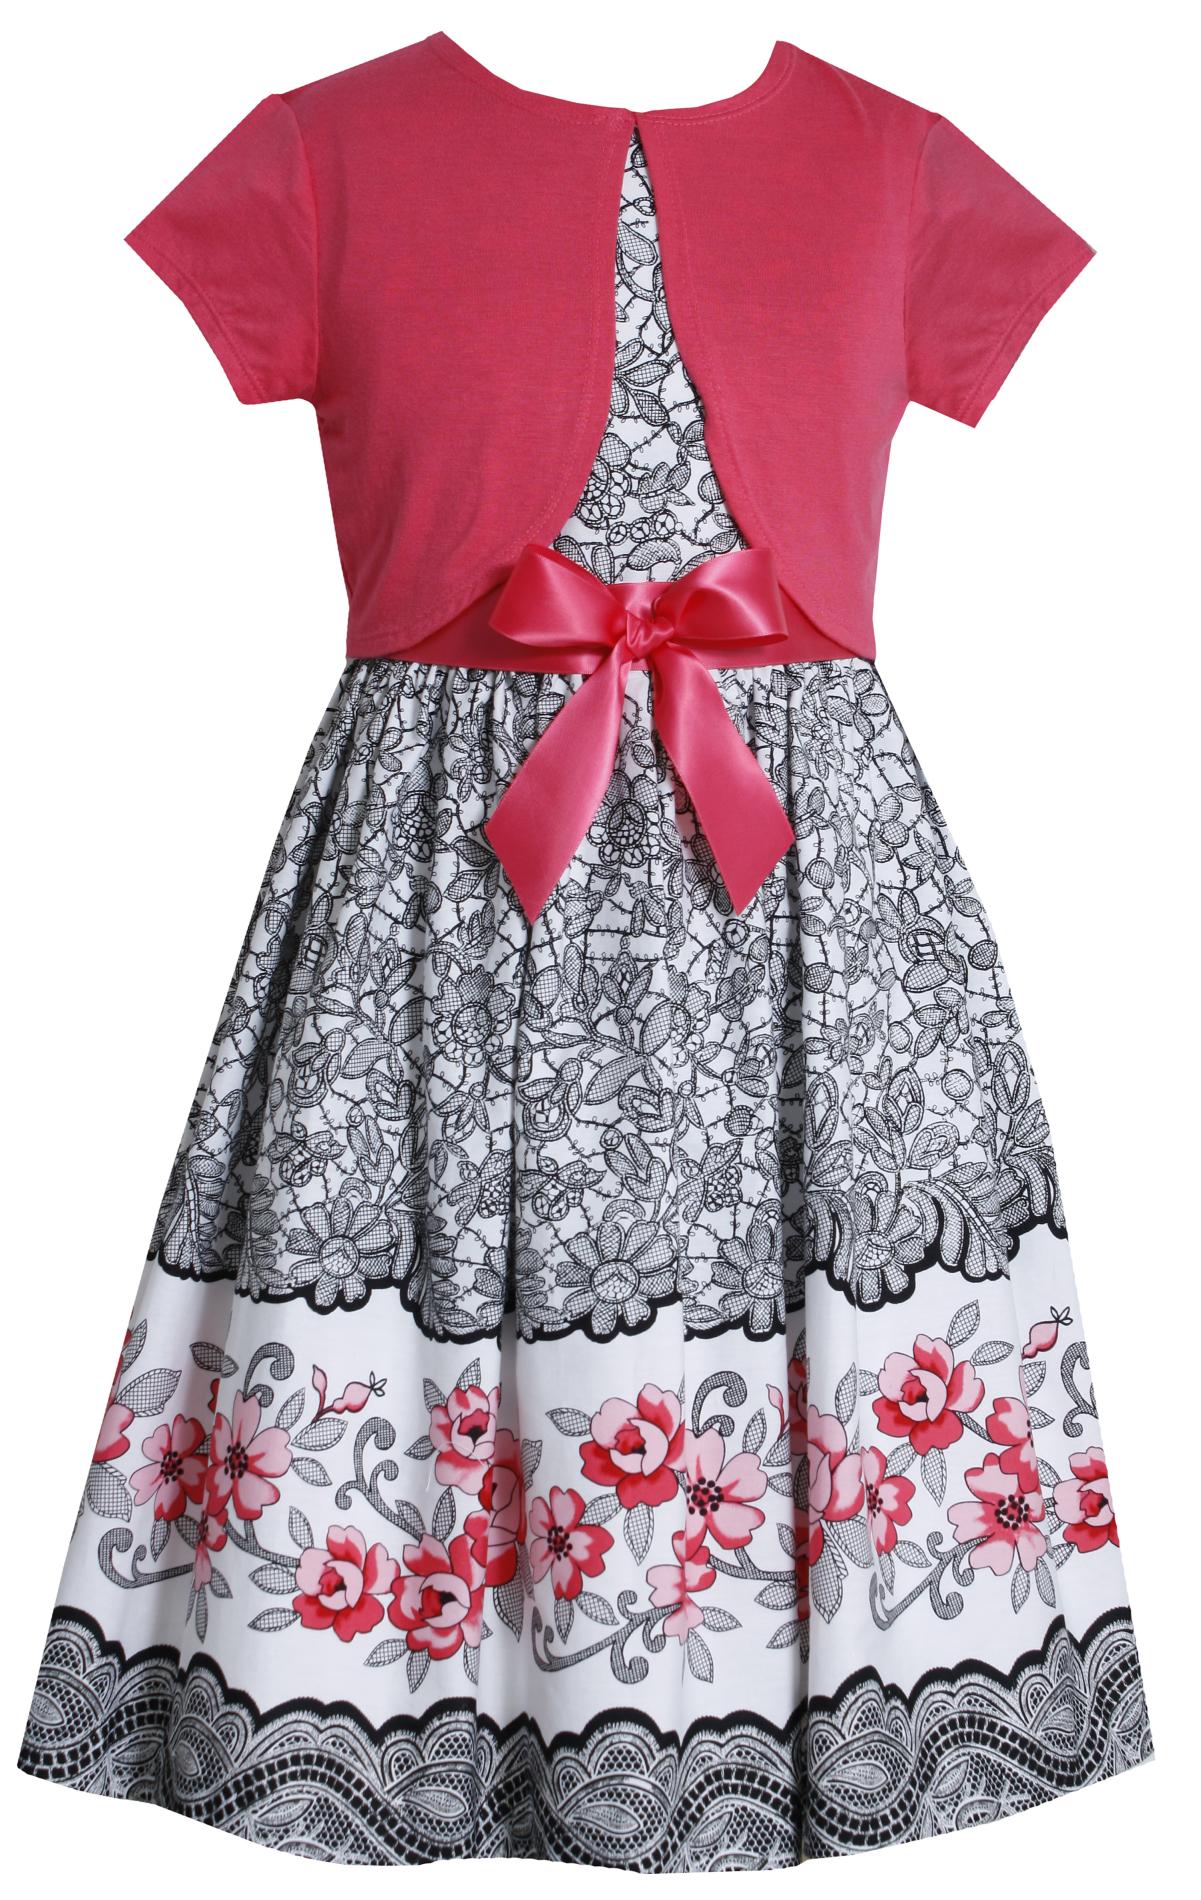 Ashley Ann Girl's Dress & Short-Sleeve Shrug - Floral & Lace